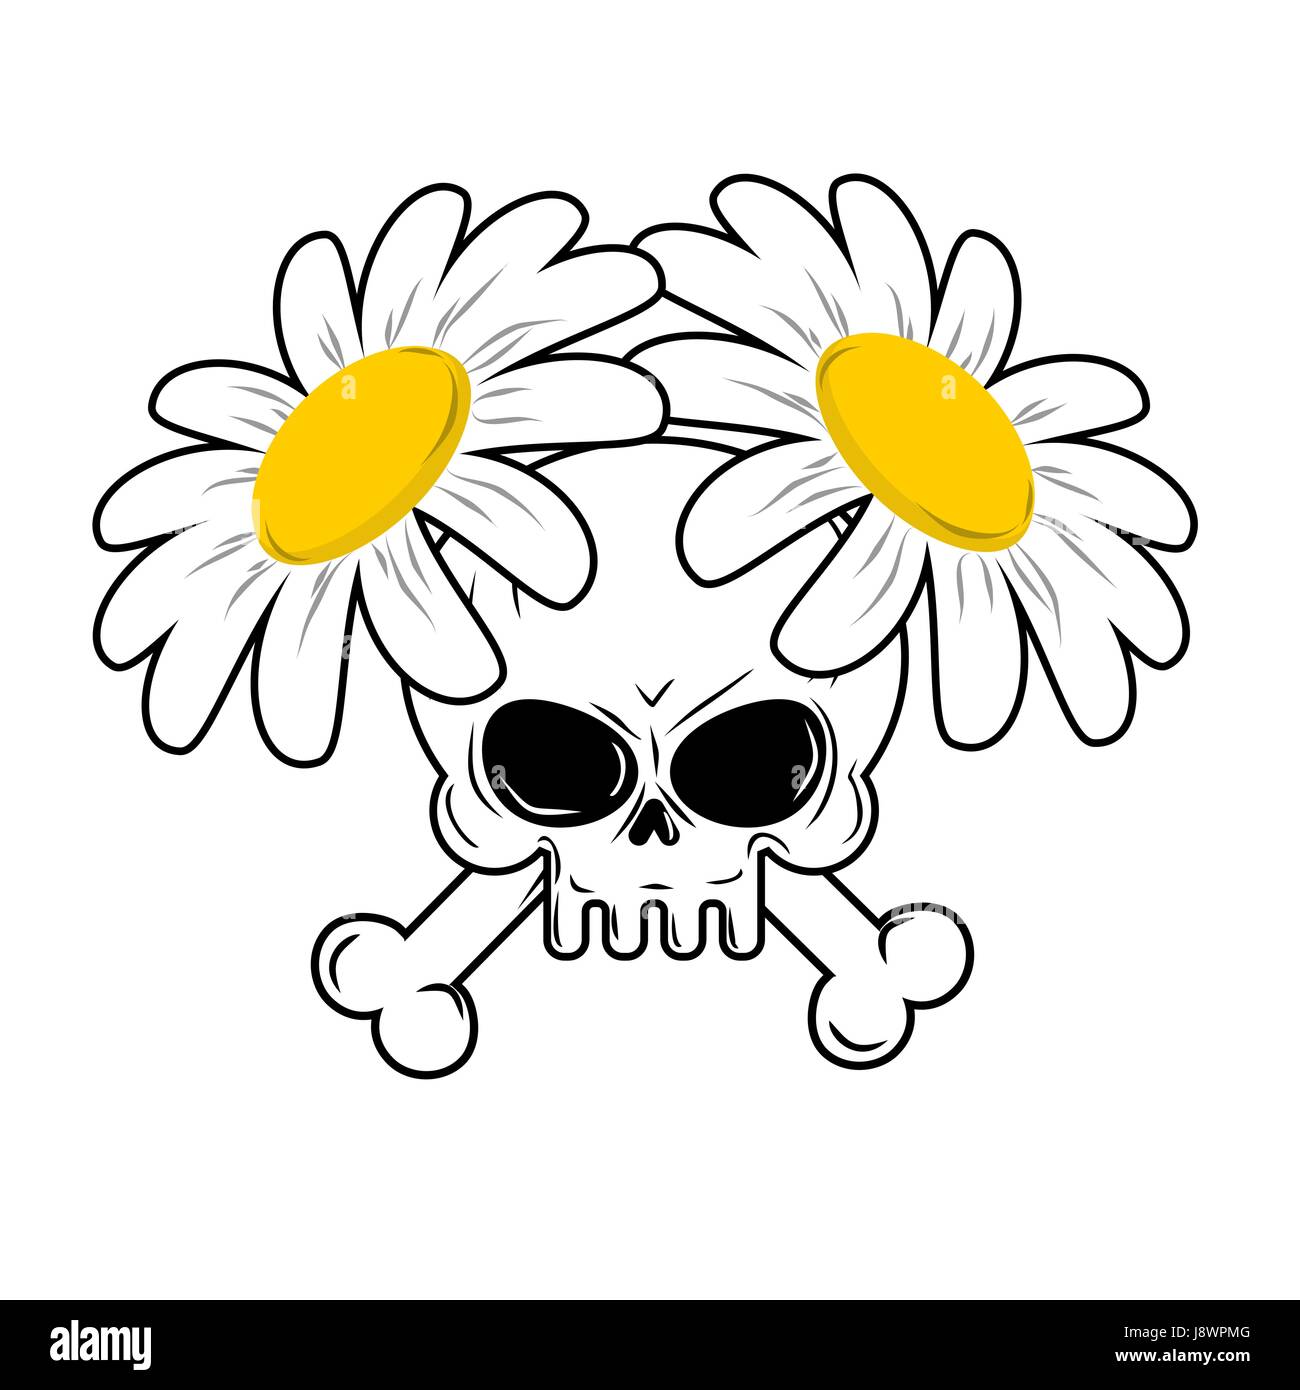 flowers that symbolize death